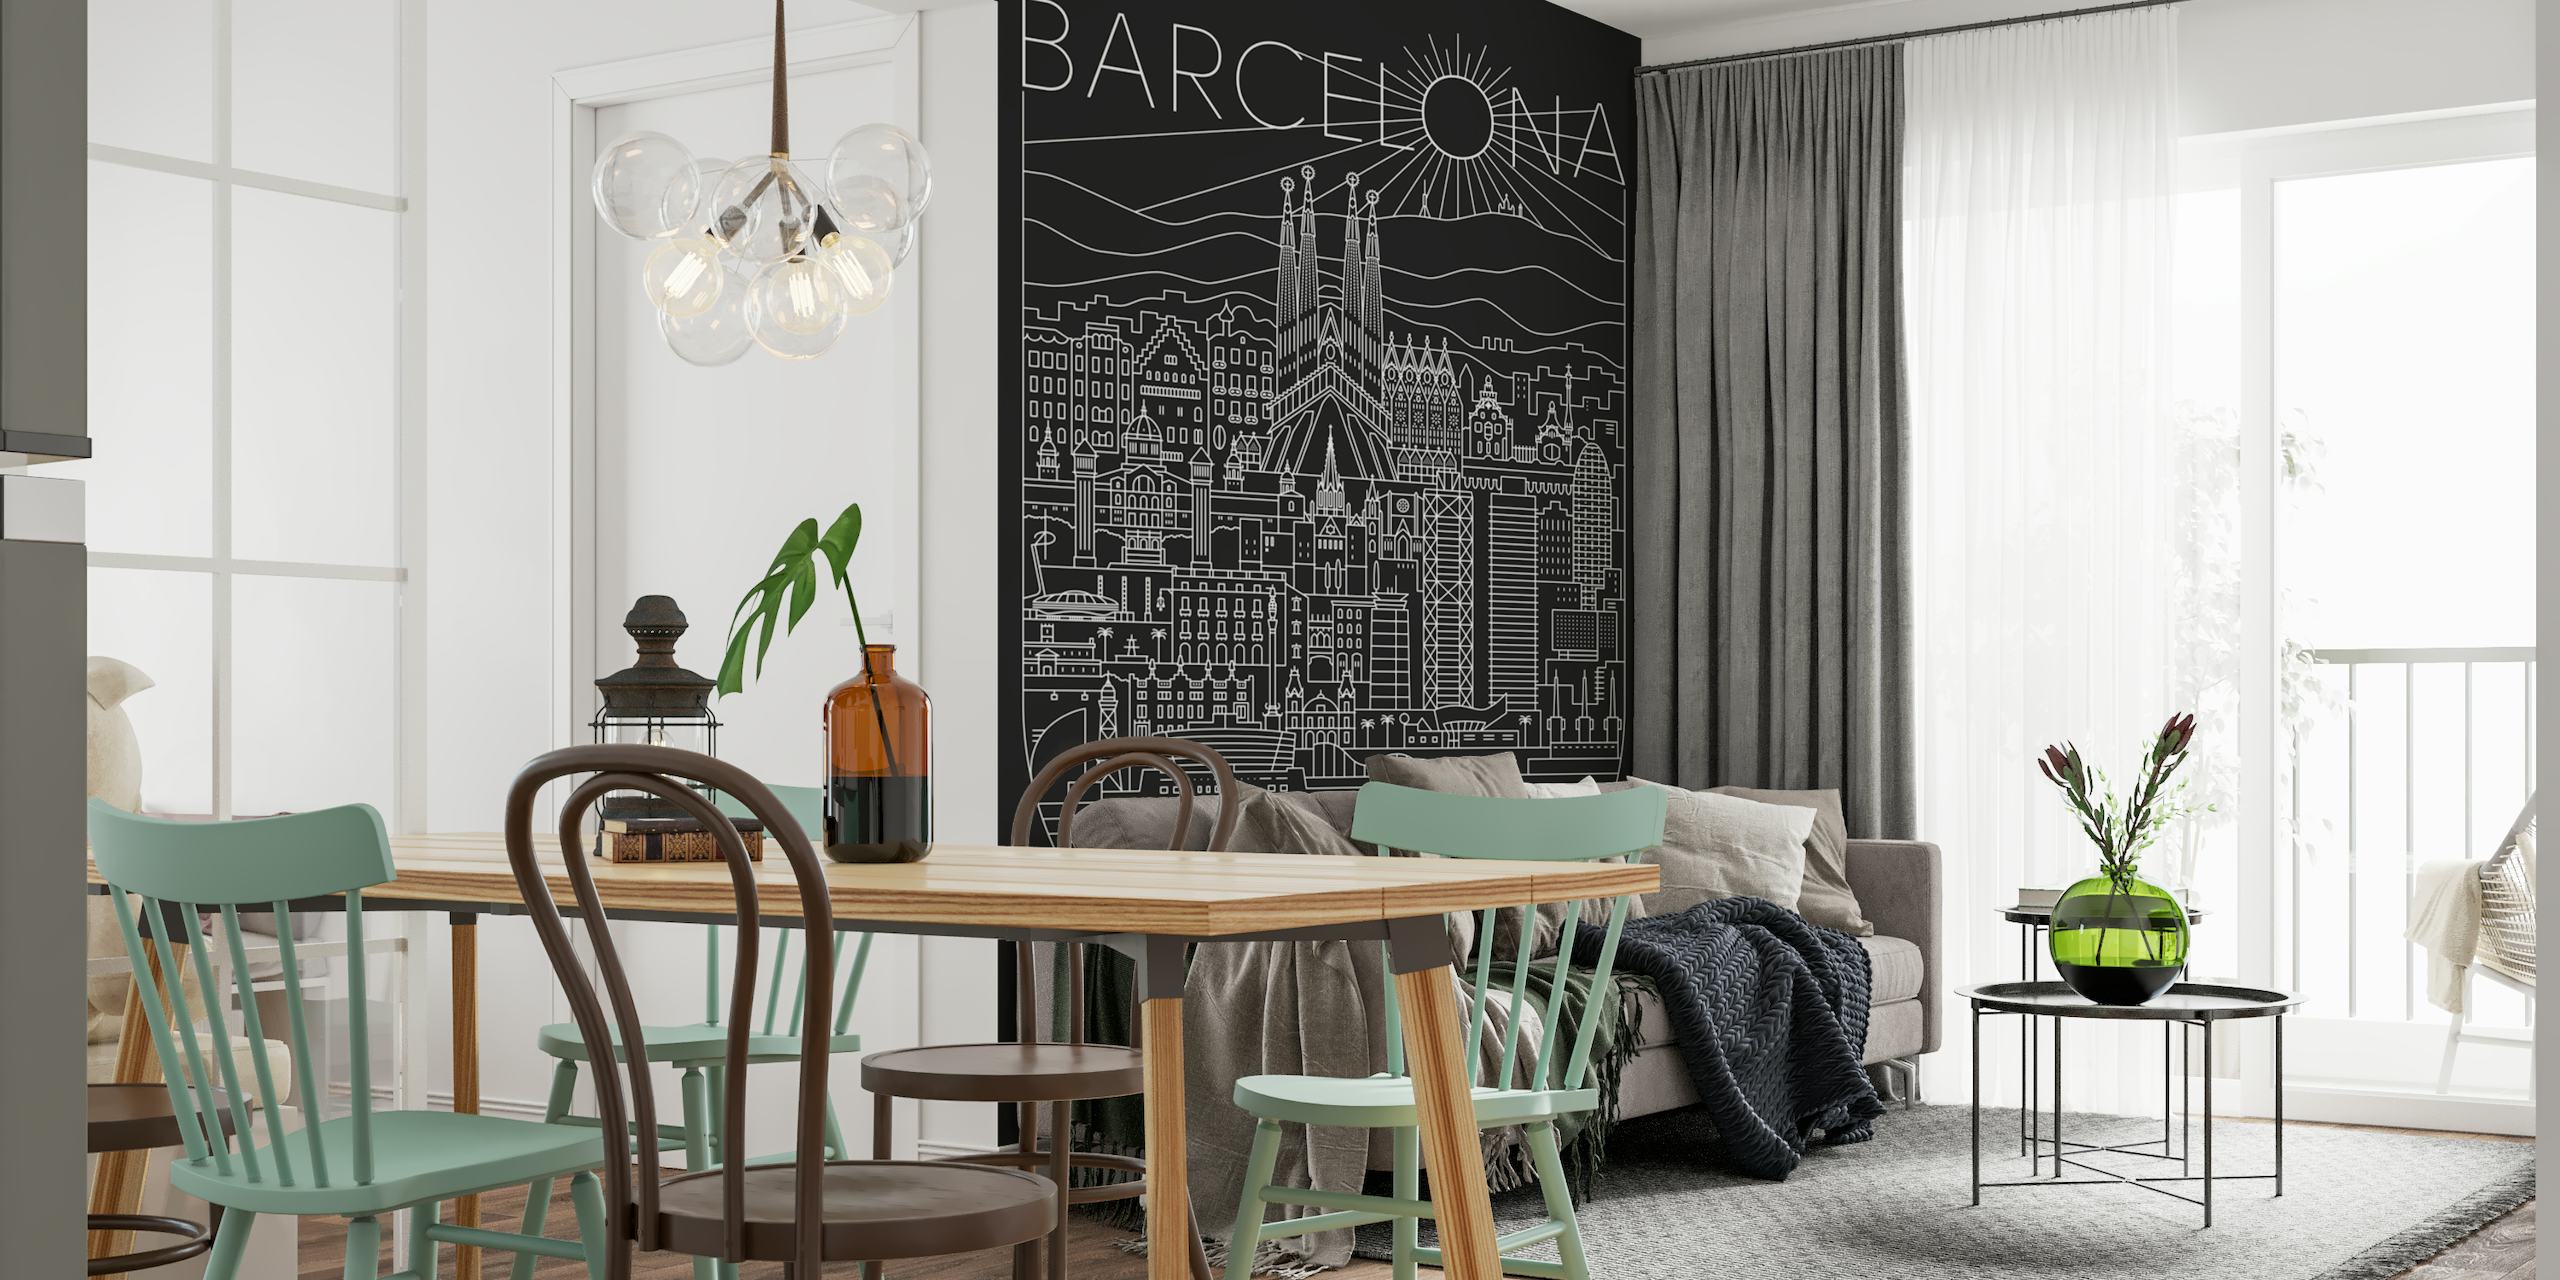 Carta da parati line art raffigurante il paesaggio urbano di Barcellona con punti salienti come la Sagrada Familia